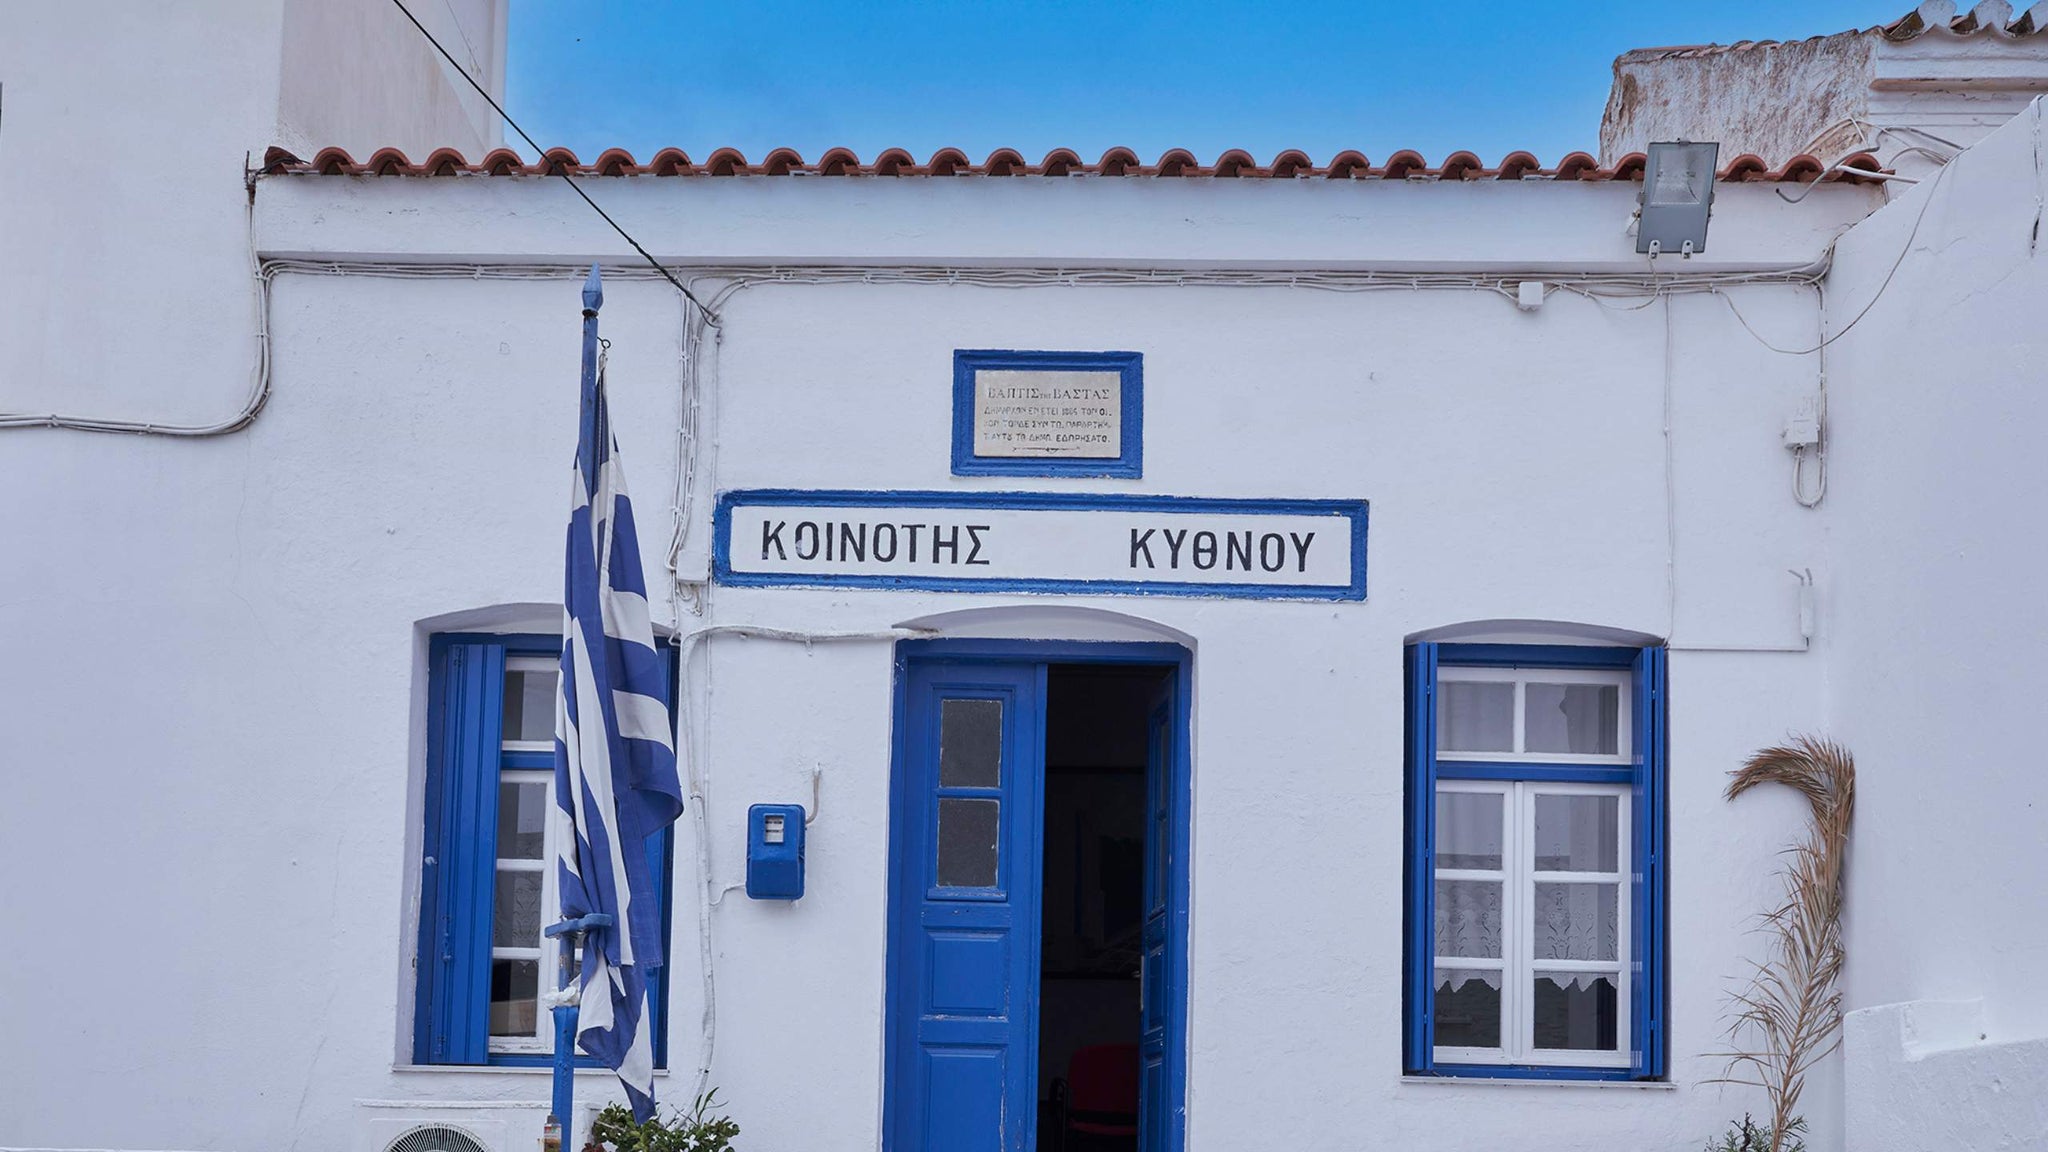 The Island of Kythnos